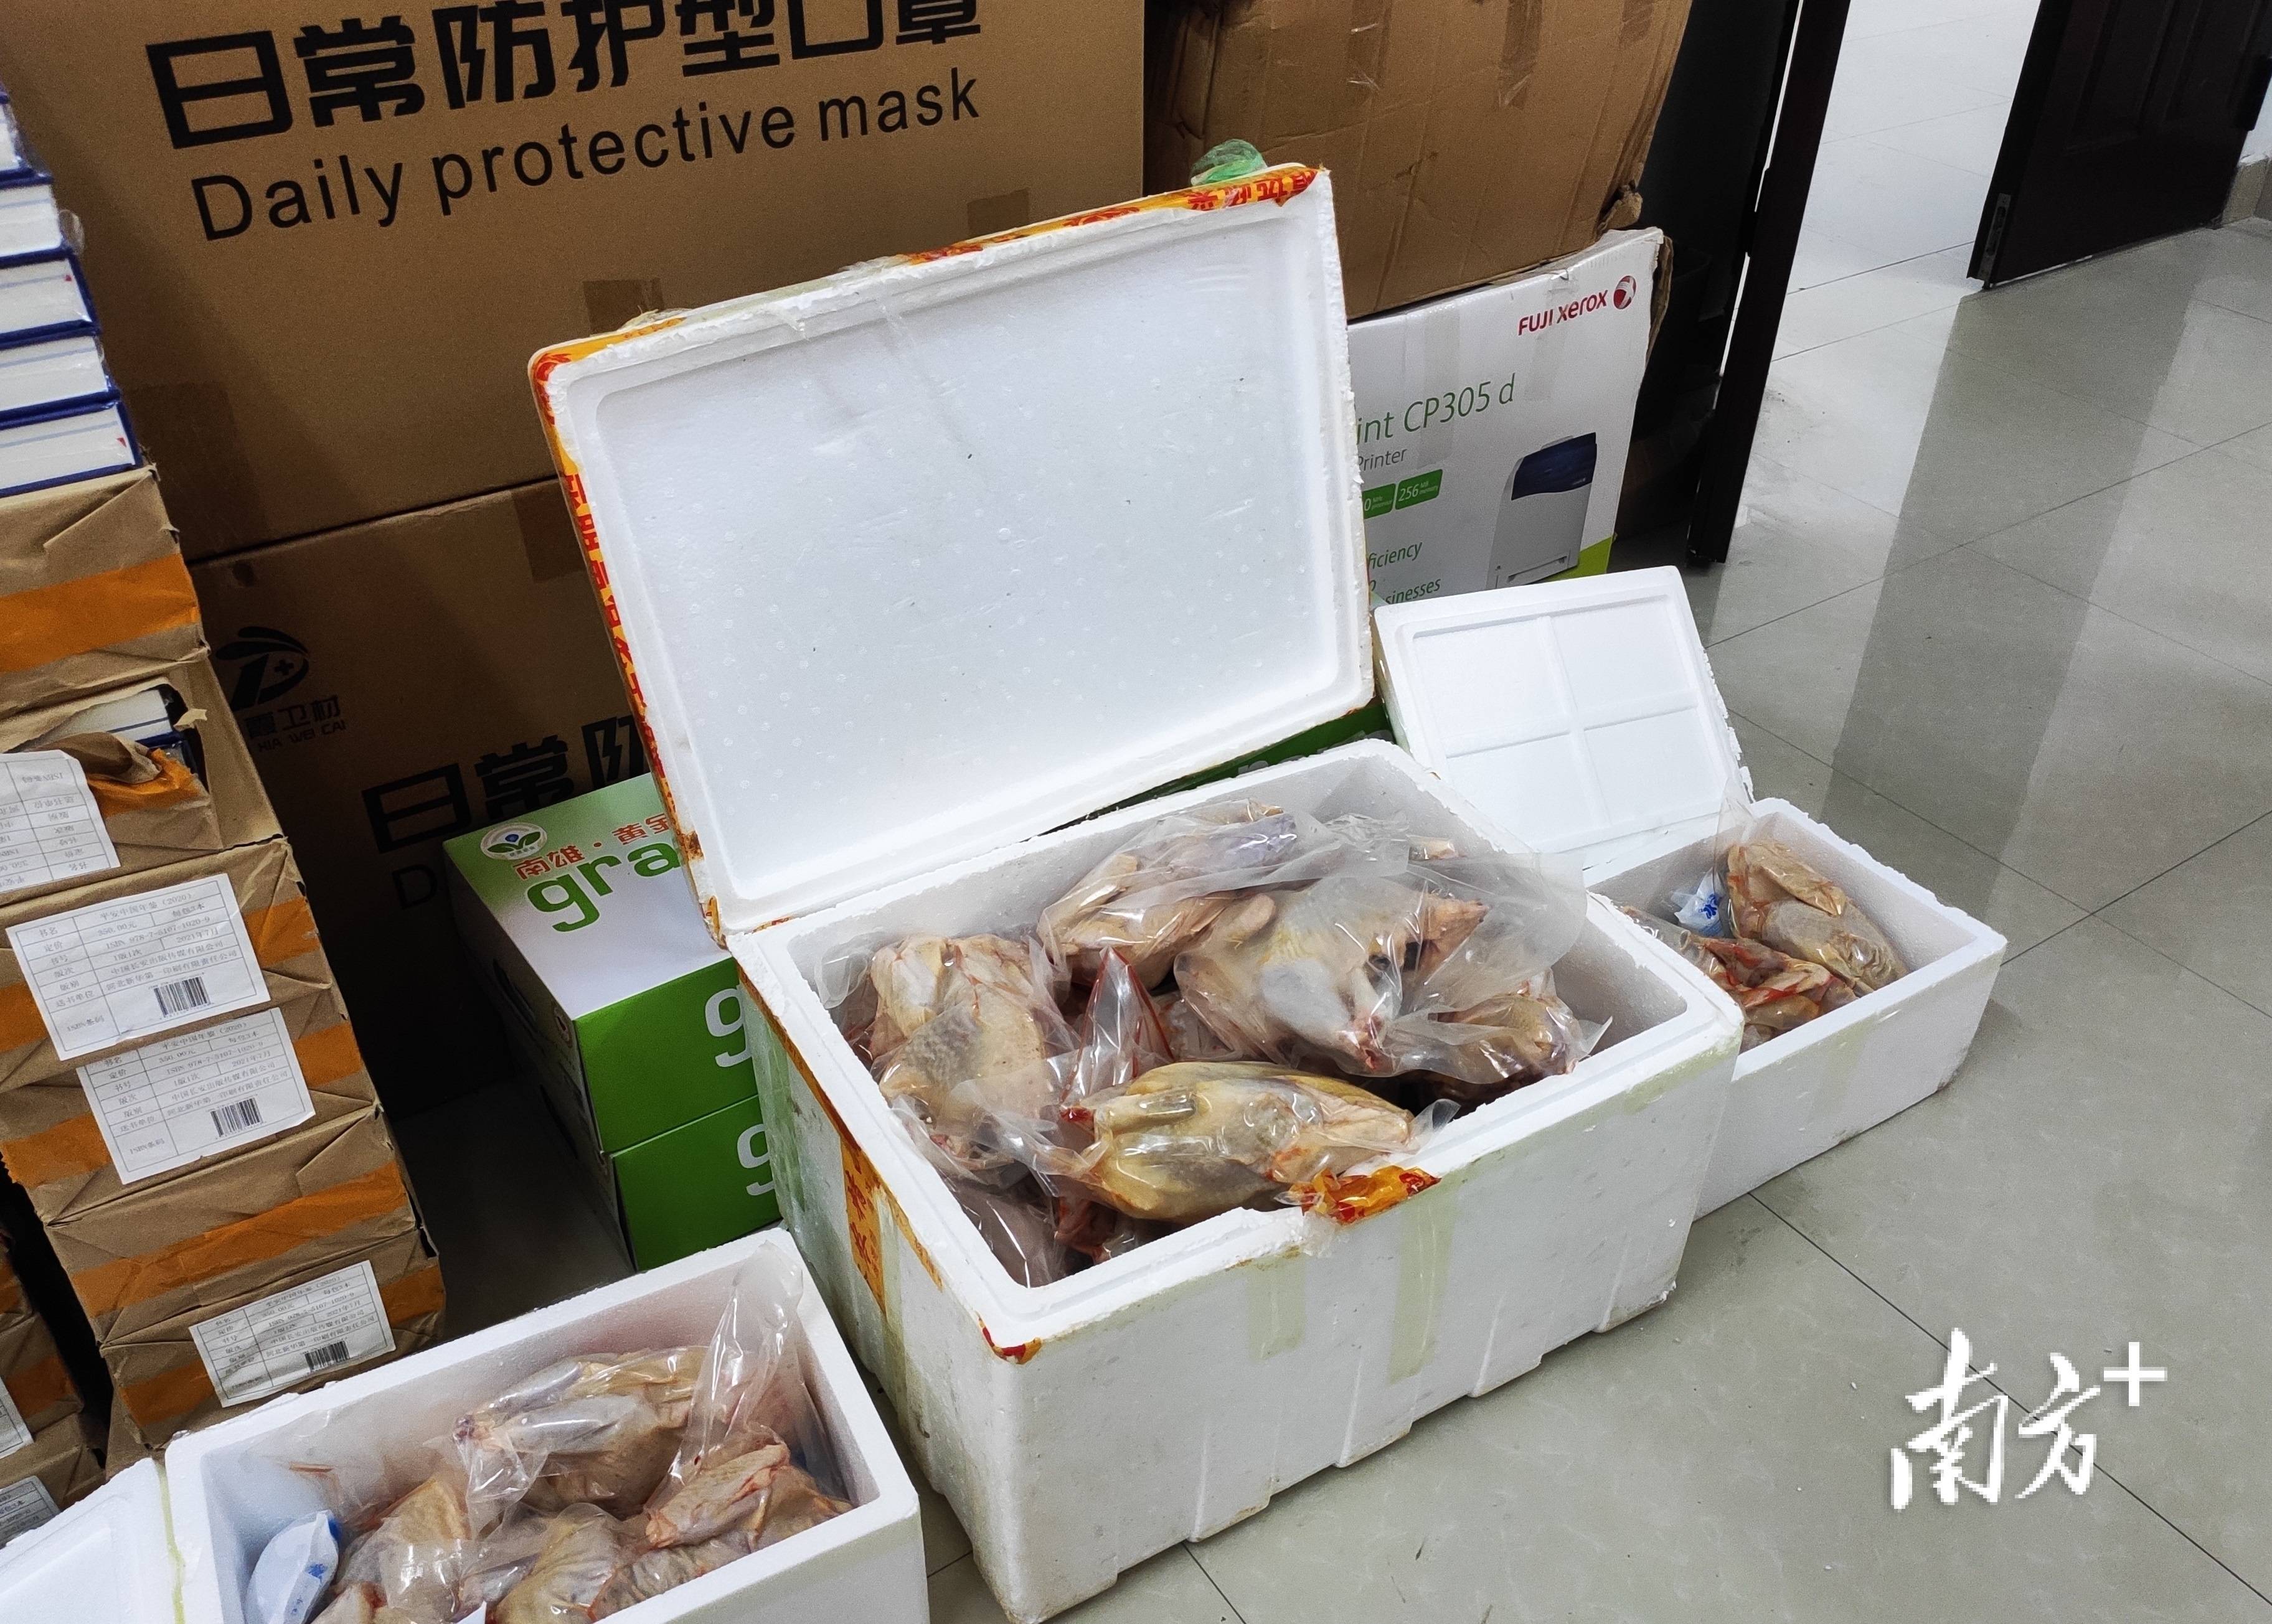 三黄胡须鸡苗 (中国 广东省 生产商) - 家禽 - 农产品及物资 产品 「自助贸易」